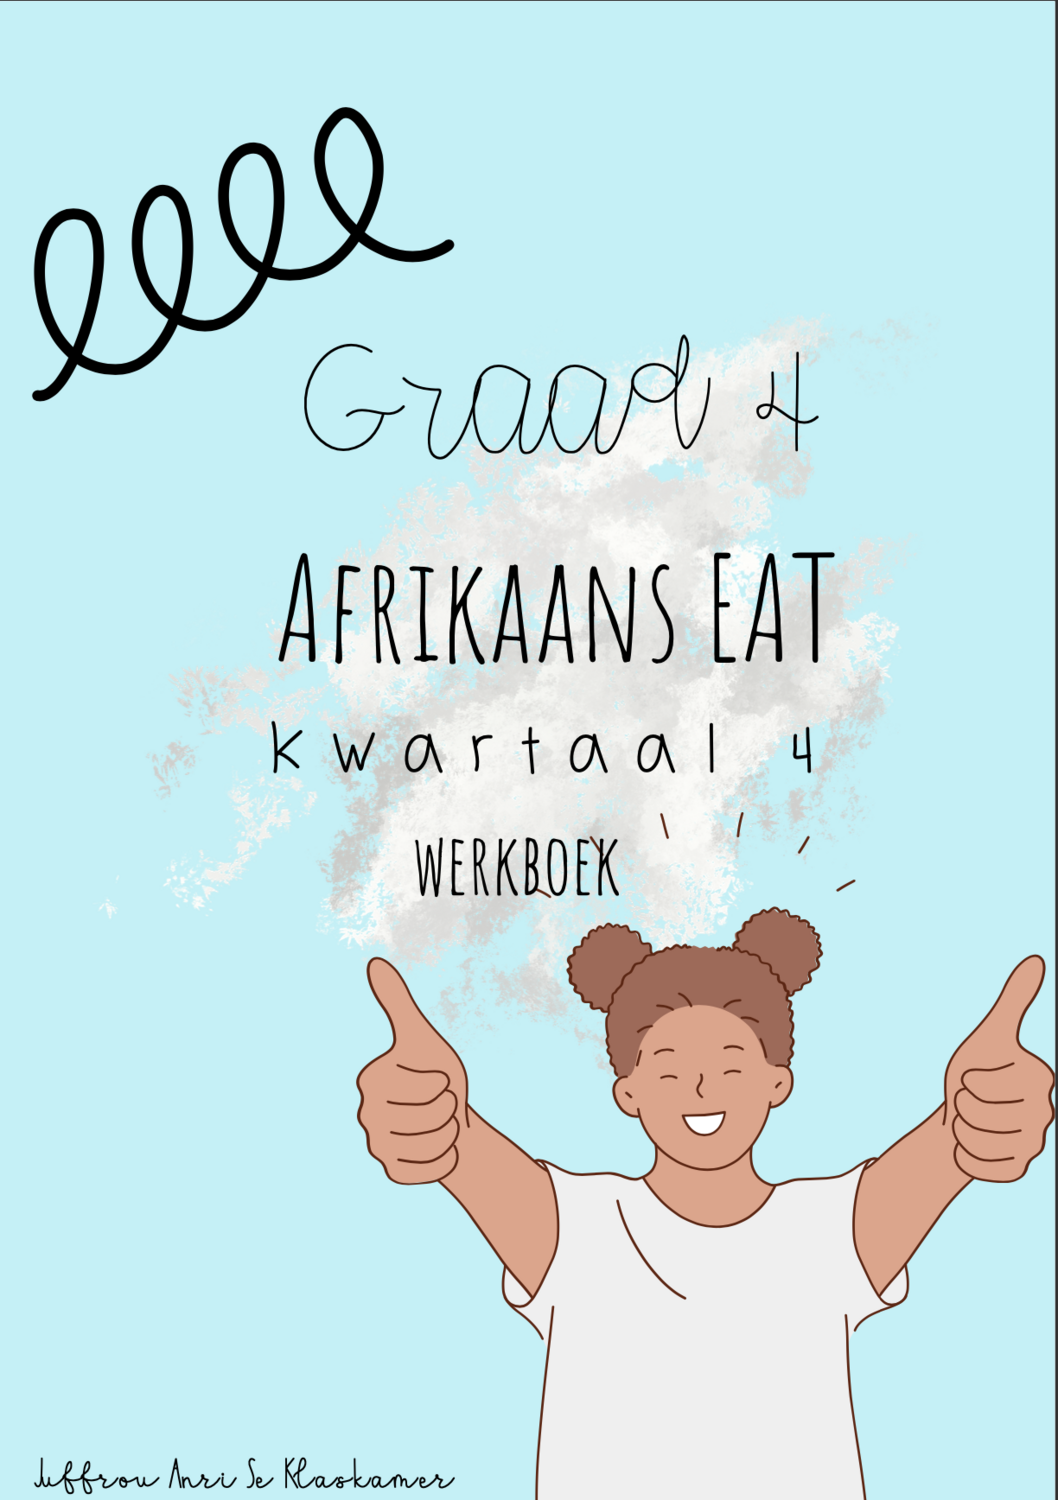 Graad 4 Afrikaans EAT kwartaal 4 werkboek (2022)